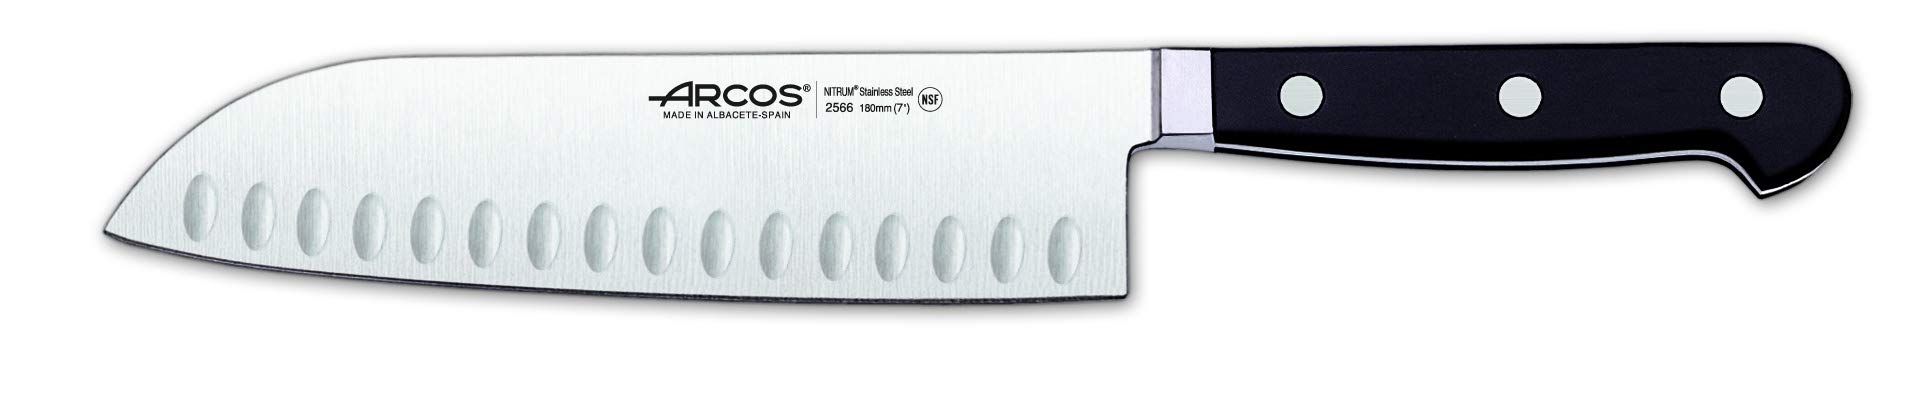 Arcos 256600 Serie Clasica - Santoku Messer Messer Asiatischer Art- Klinge aus Nitrum geschmiedetem Edelstahl 180 mm - HandGriff Polyoxymethylen (POM) Farbe Schwarz